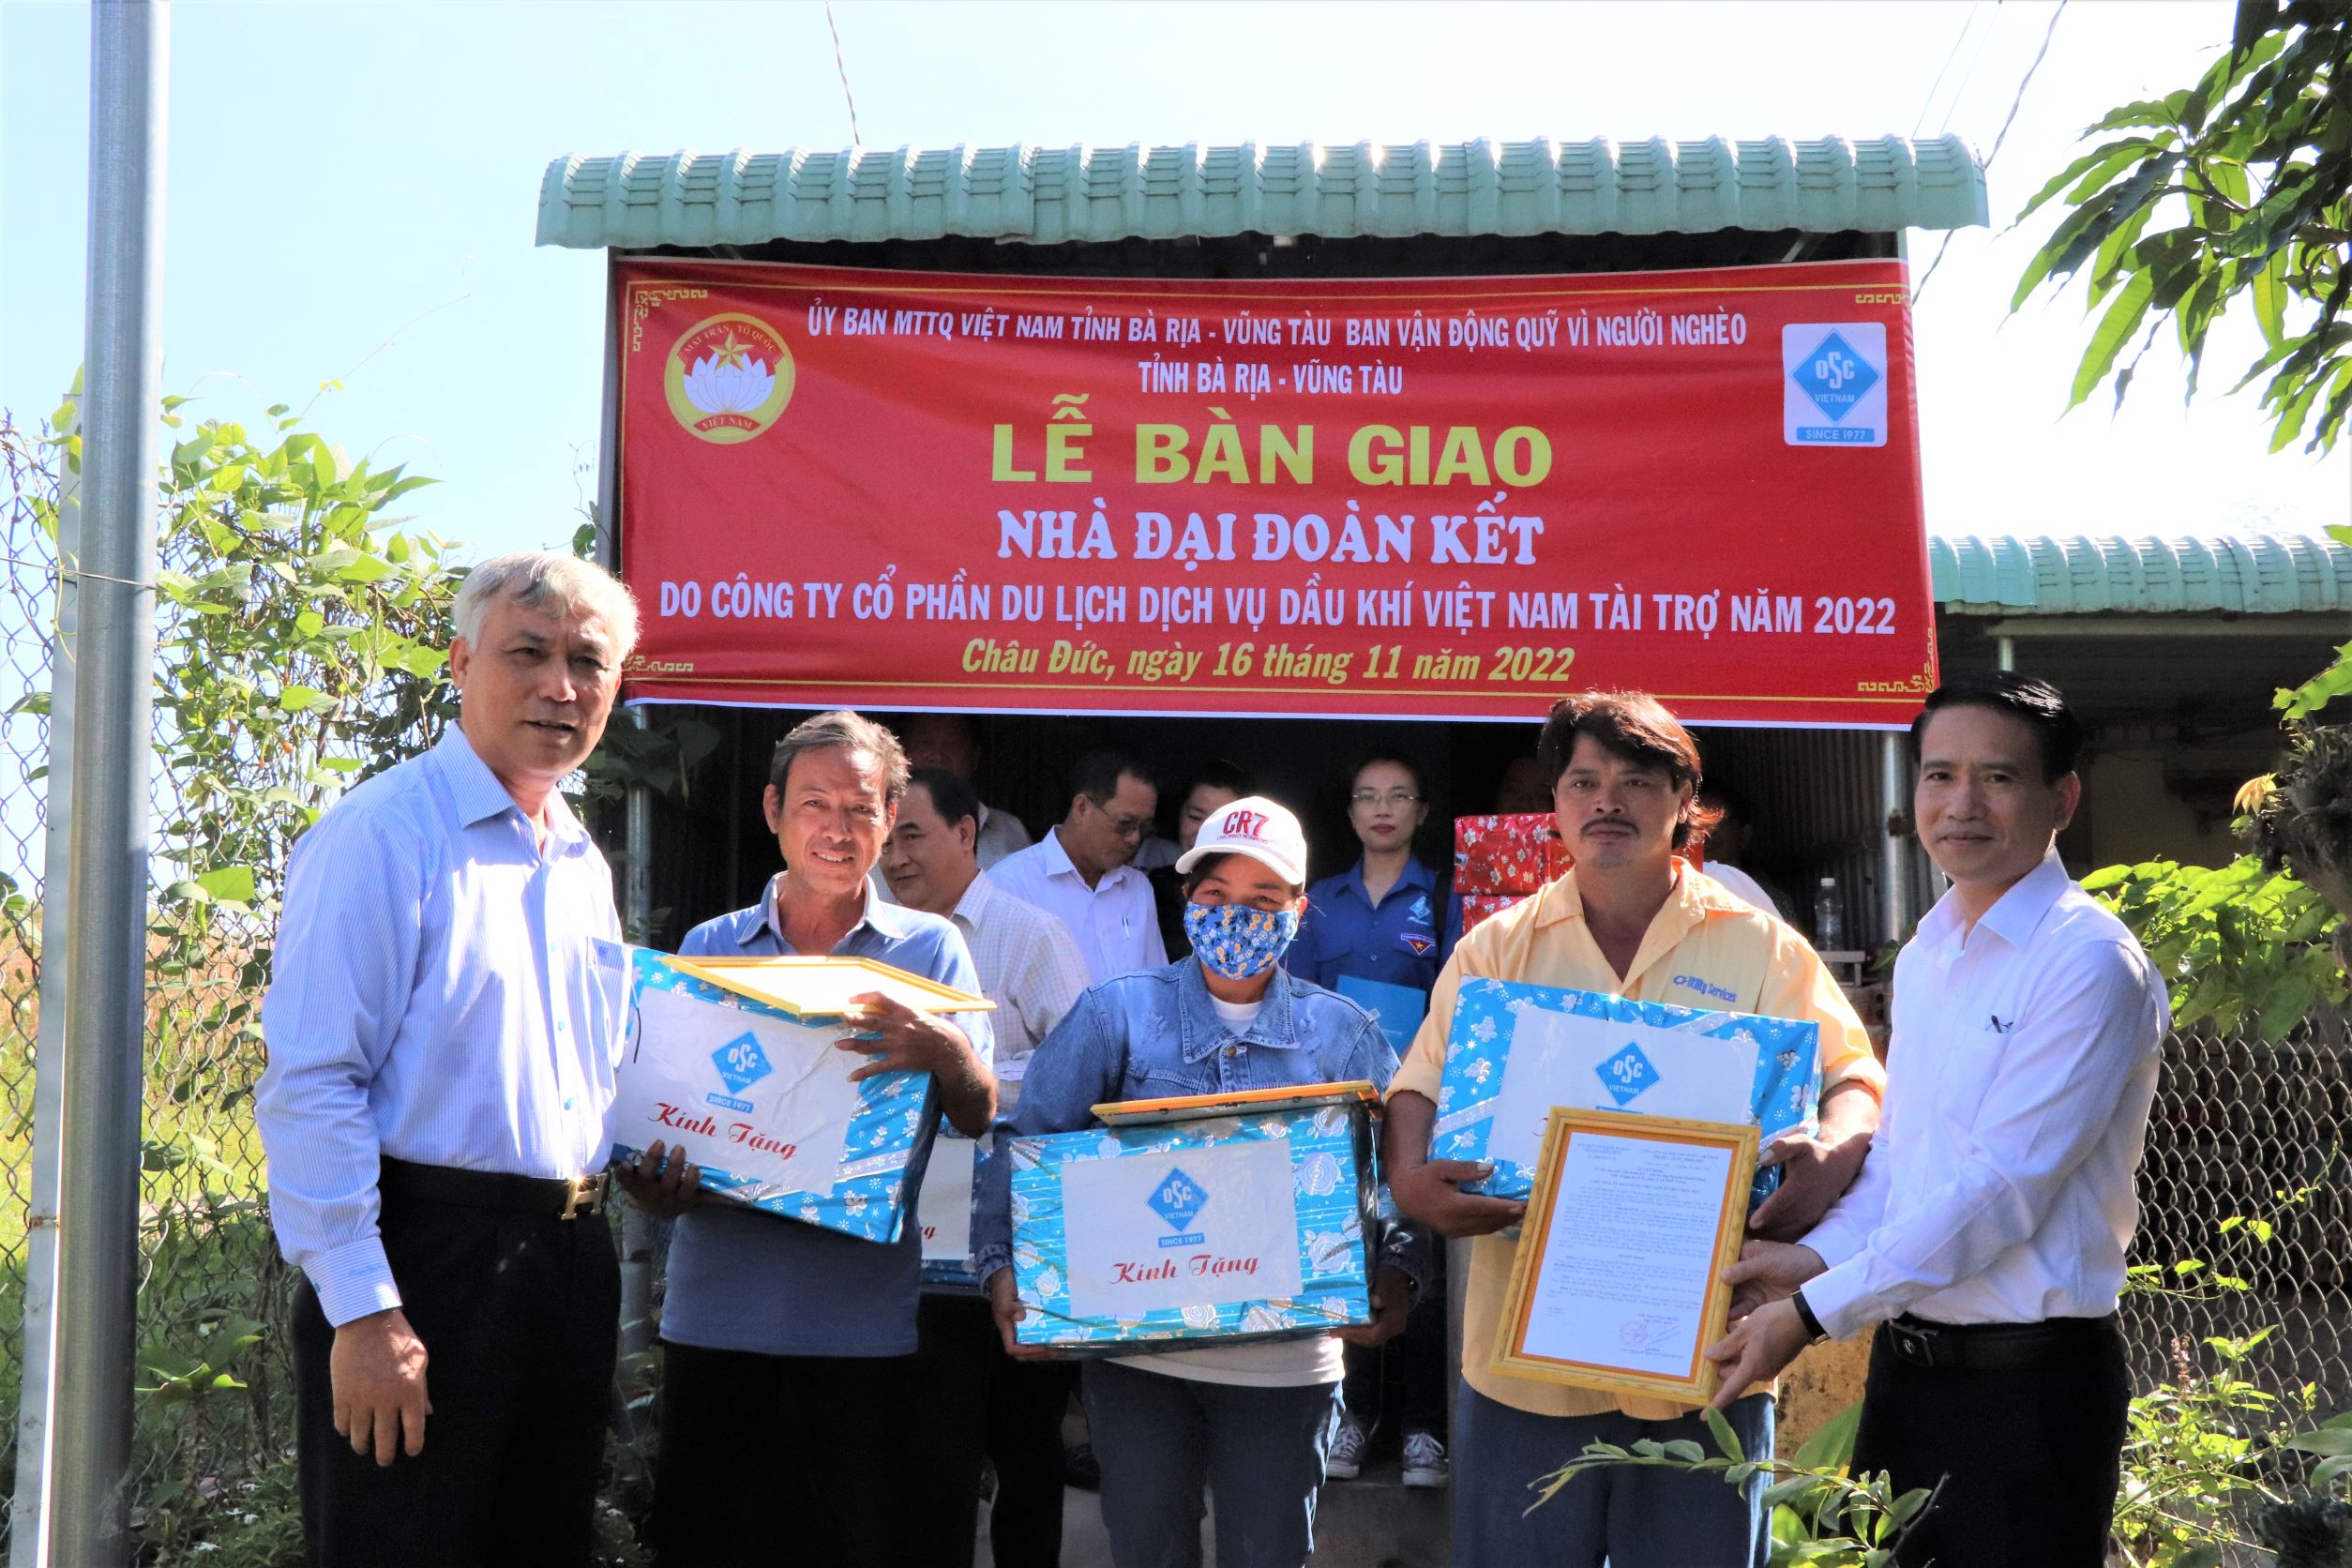 Ông Thái Hồng Cương (bên phải), Bí thư Đảng ủy, thành viên HĐQT OSC Việt Nam; ông Lê Văn Chiến, Tổng Giám đốc OSC Việt Nam tặng quà cho các gia đình tại lễ bàn giao nhà.